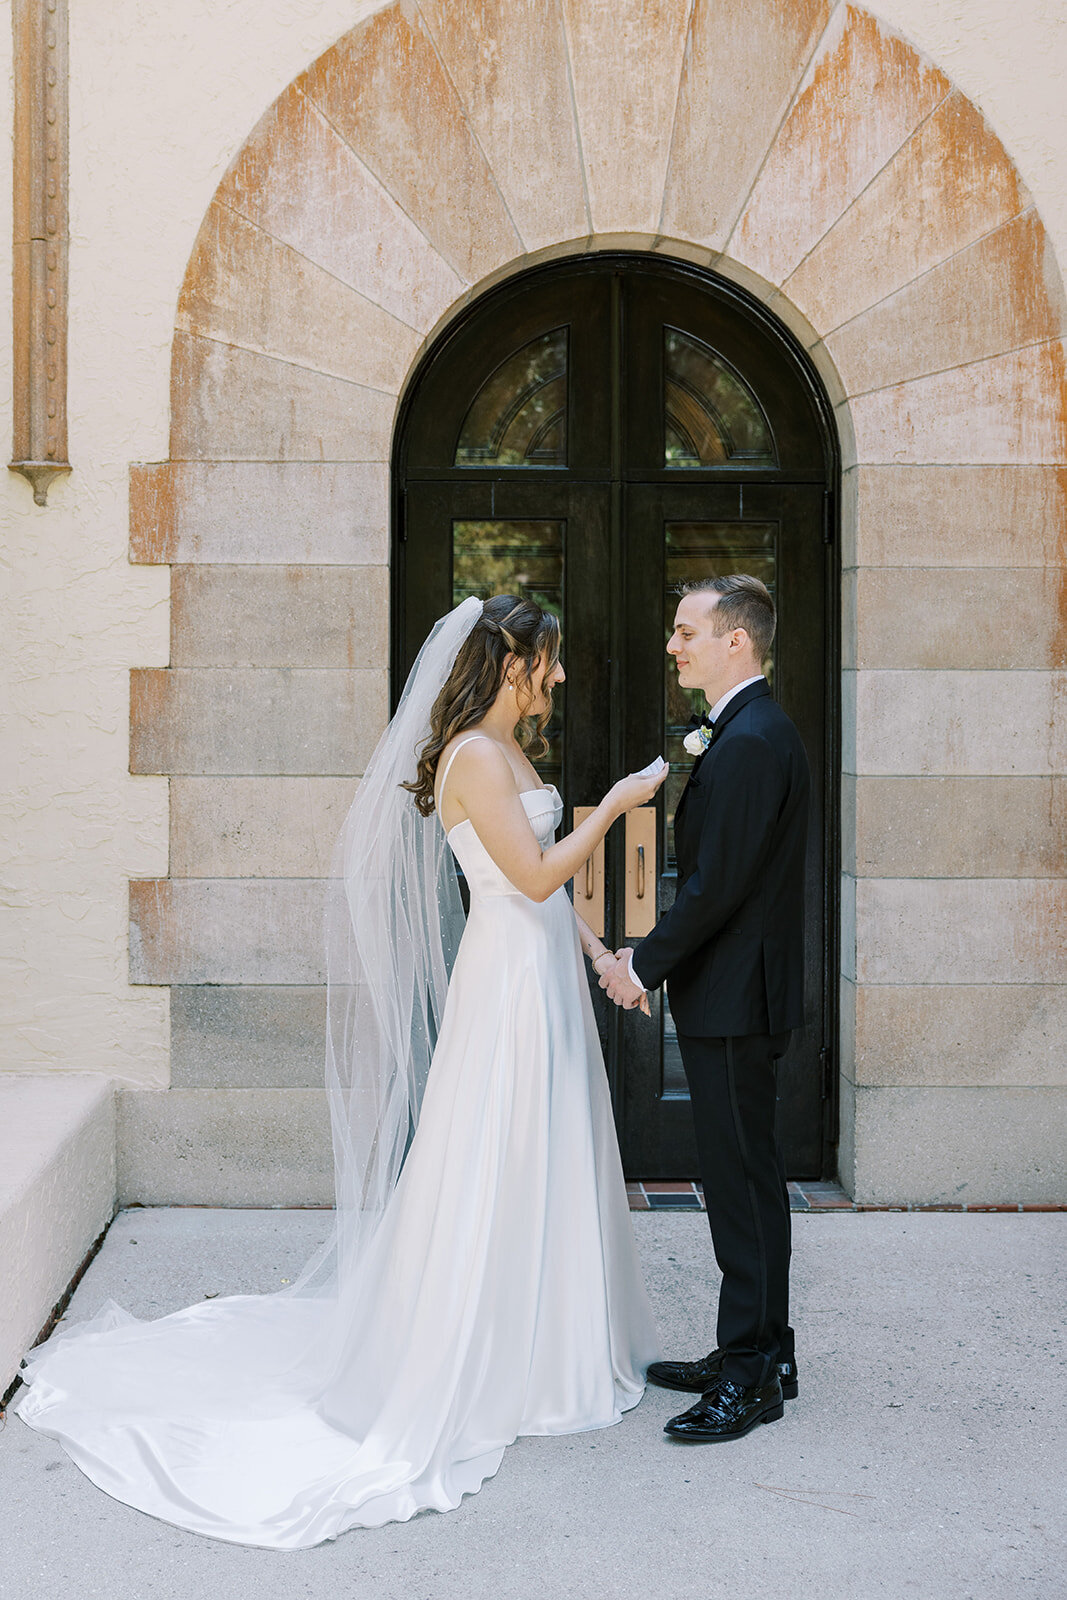 CORNELIA ZAISS PHOTOGRAPHY COURTNEY + ANDREW WEDDING 0339_websize